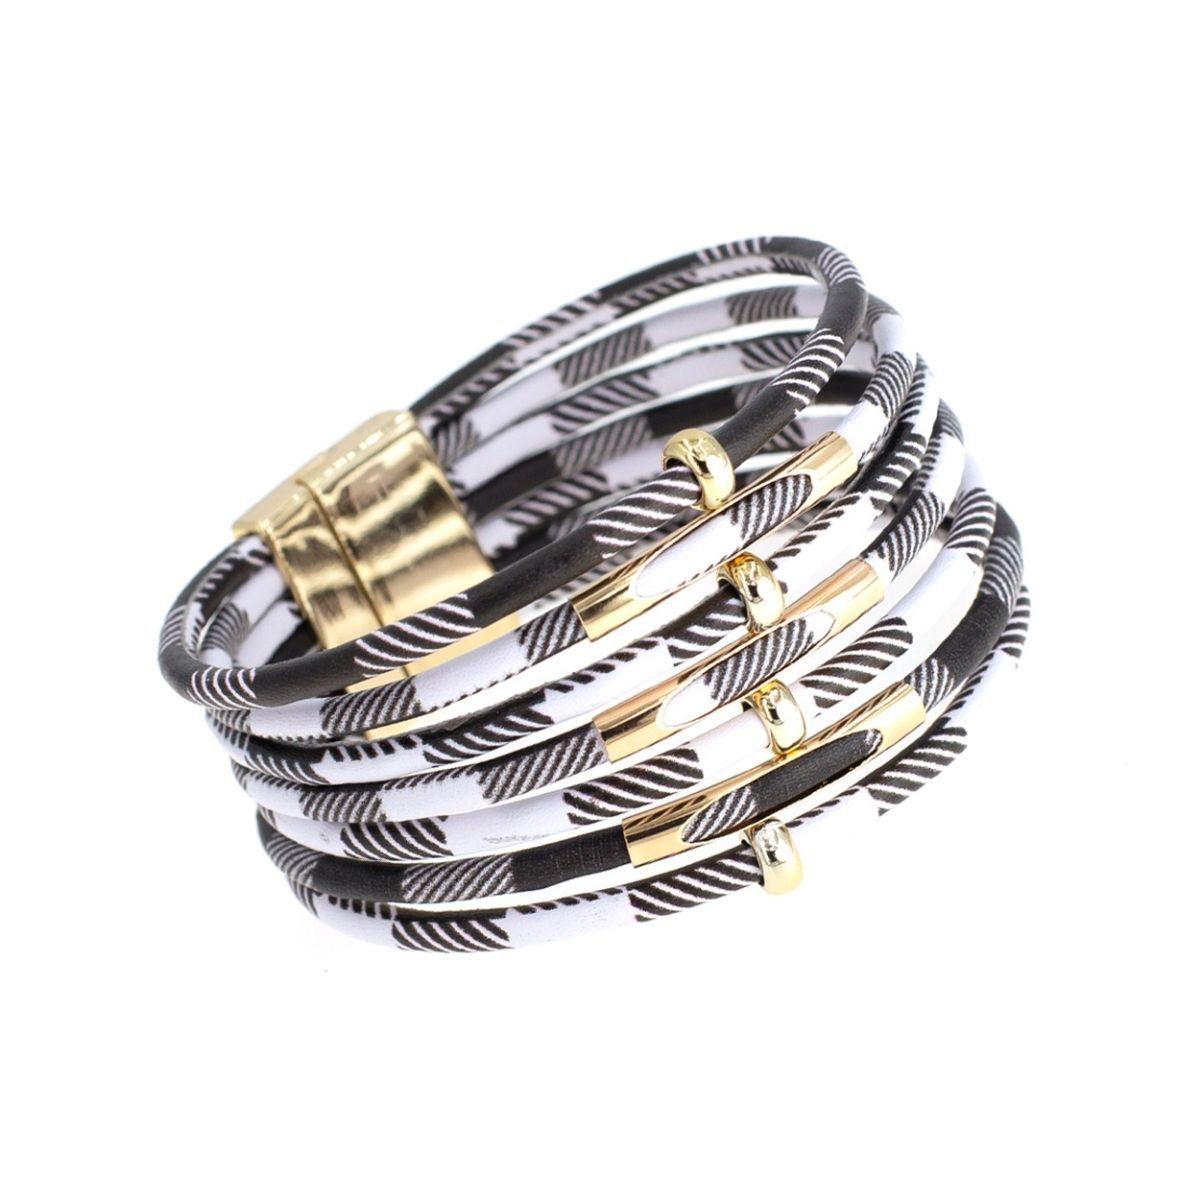 Trendy Monochrome Cord Bracelet: Shop Now for Stylish Women's Jewelry